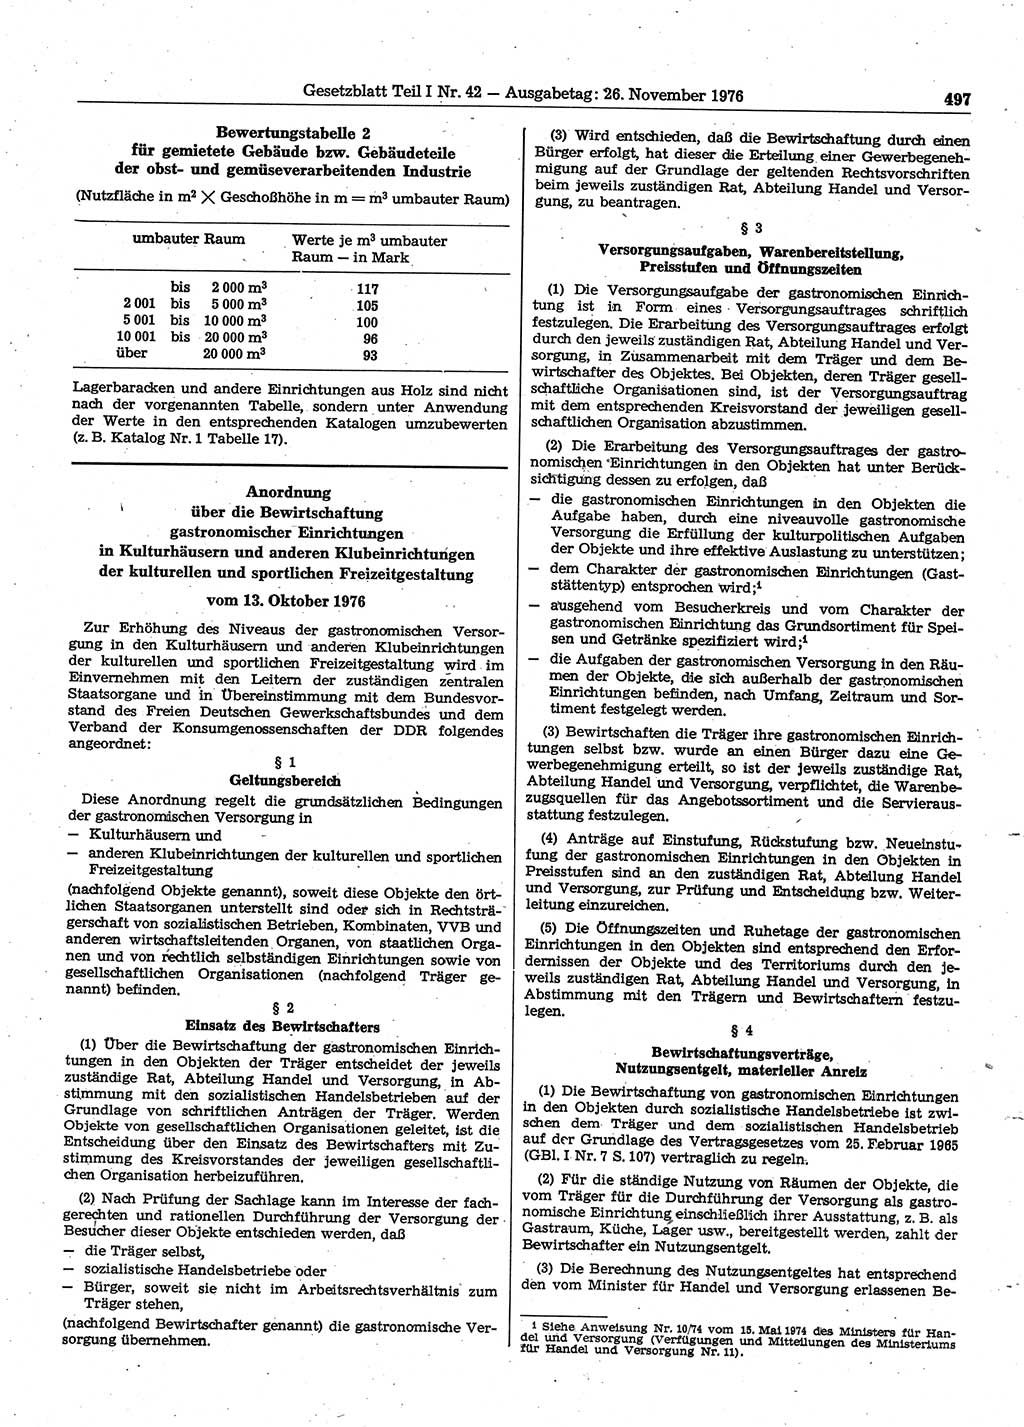 Gesetzblatt (GBl.) der Deutschen Demokratischen Republik (DDR) Teil Ⅰ 1976, Seite 497 (GBl. DDR Ⅰ 1976, S. 497)